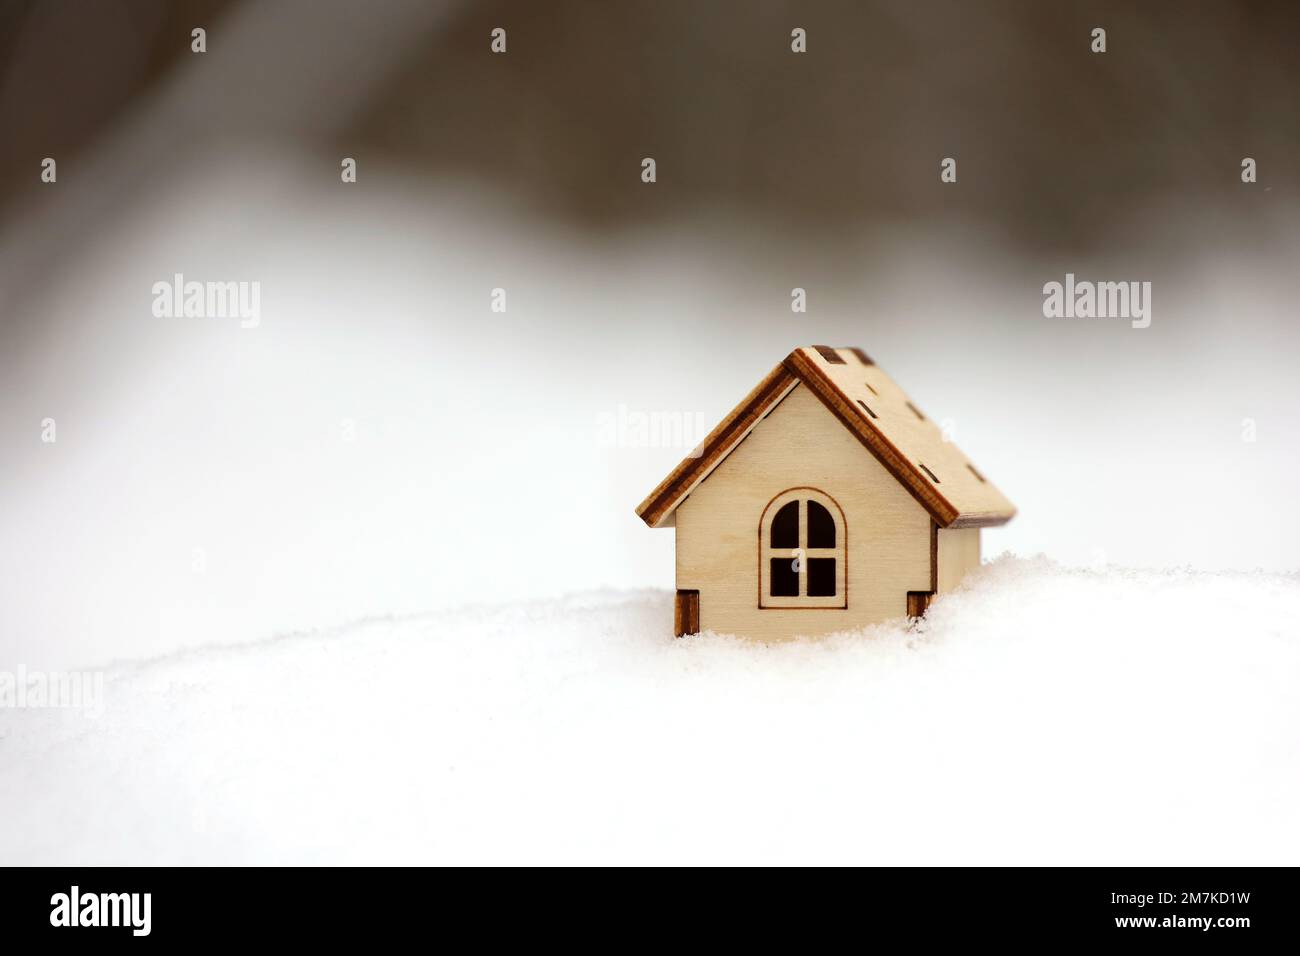 Modèle de maison en bois dans une neige sur fond de forêt d'hiver.Concept de chalet de campagne, immobilier dans zone écologiquement propre Banque D'Images